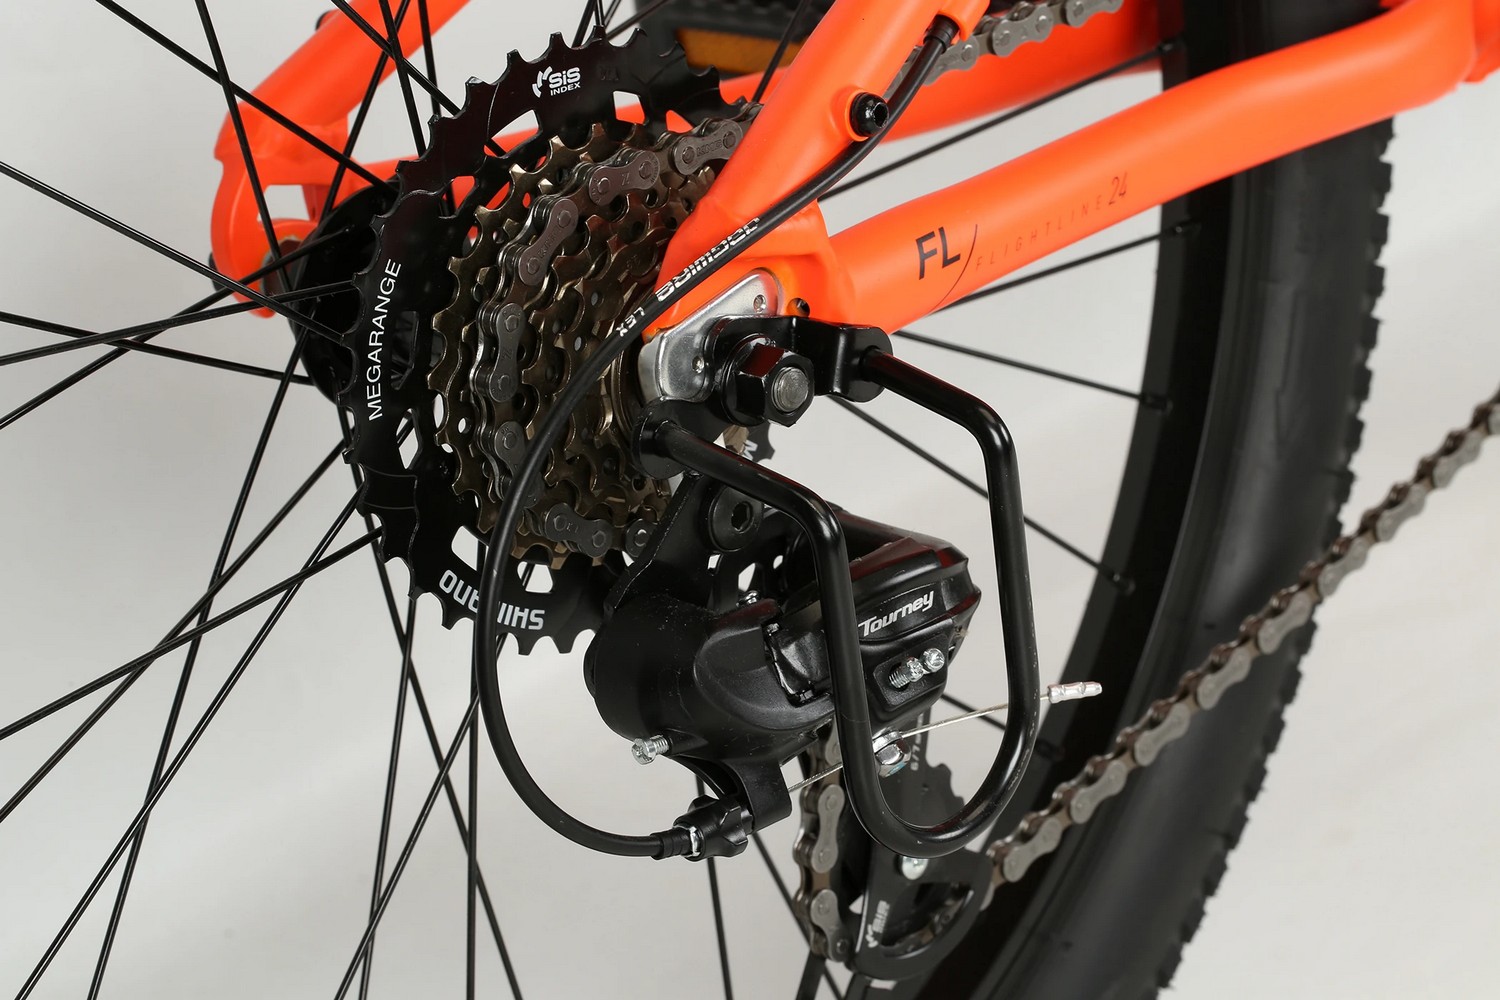 Подростковый велосипед Haro Flightline 24, год 2021, цвет Оранжевый-Черный